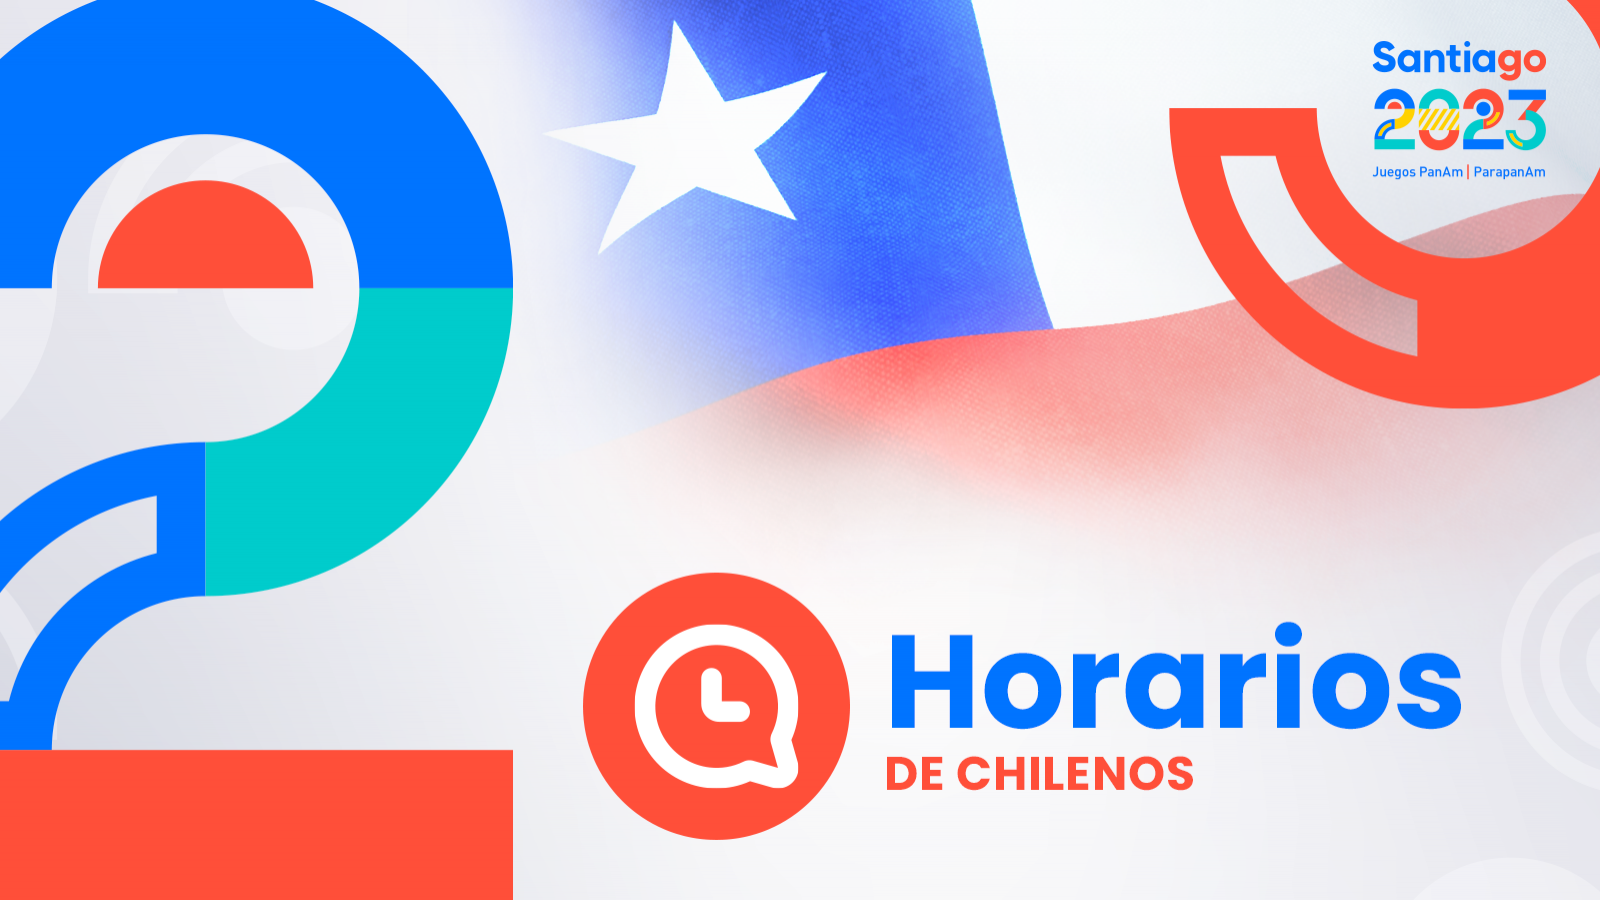 HORARIOS de chilenos en Santiago 2023: martes 31 de octubre